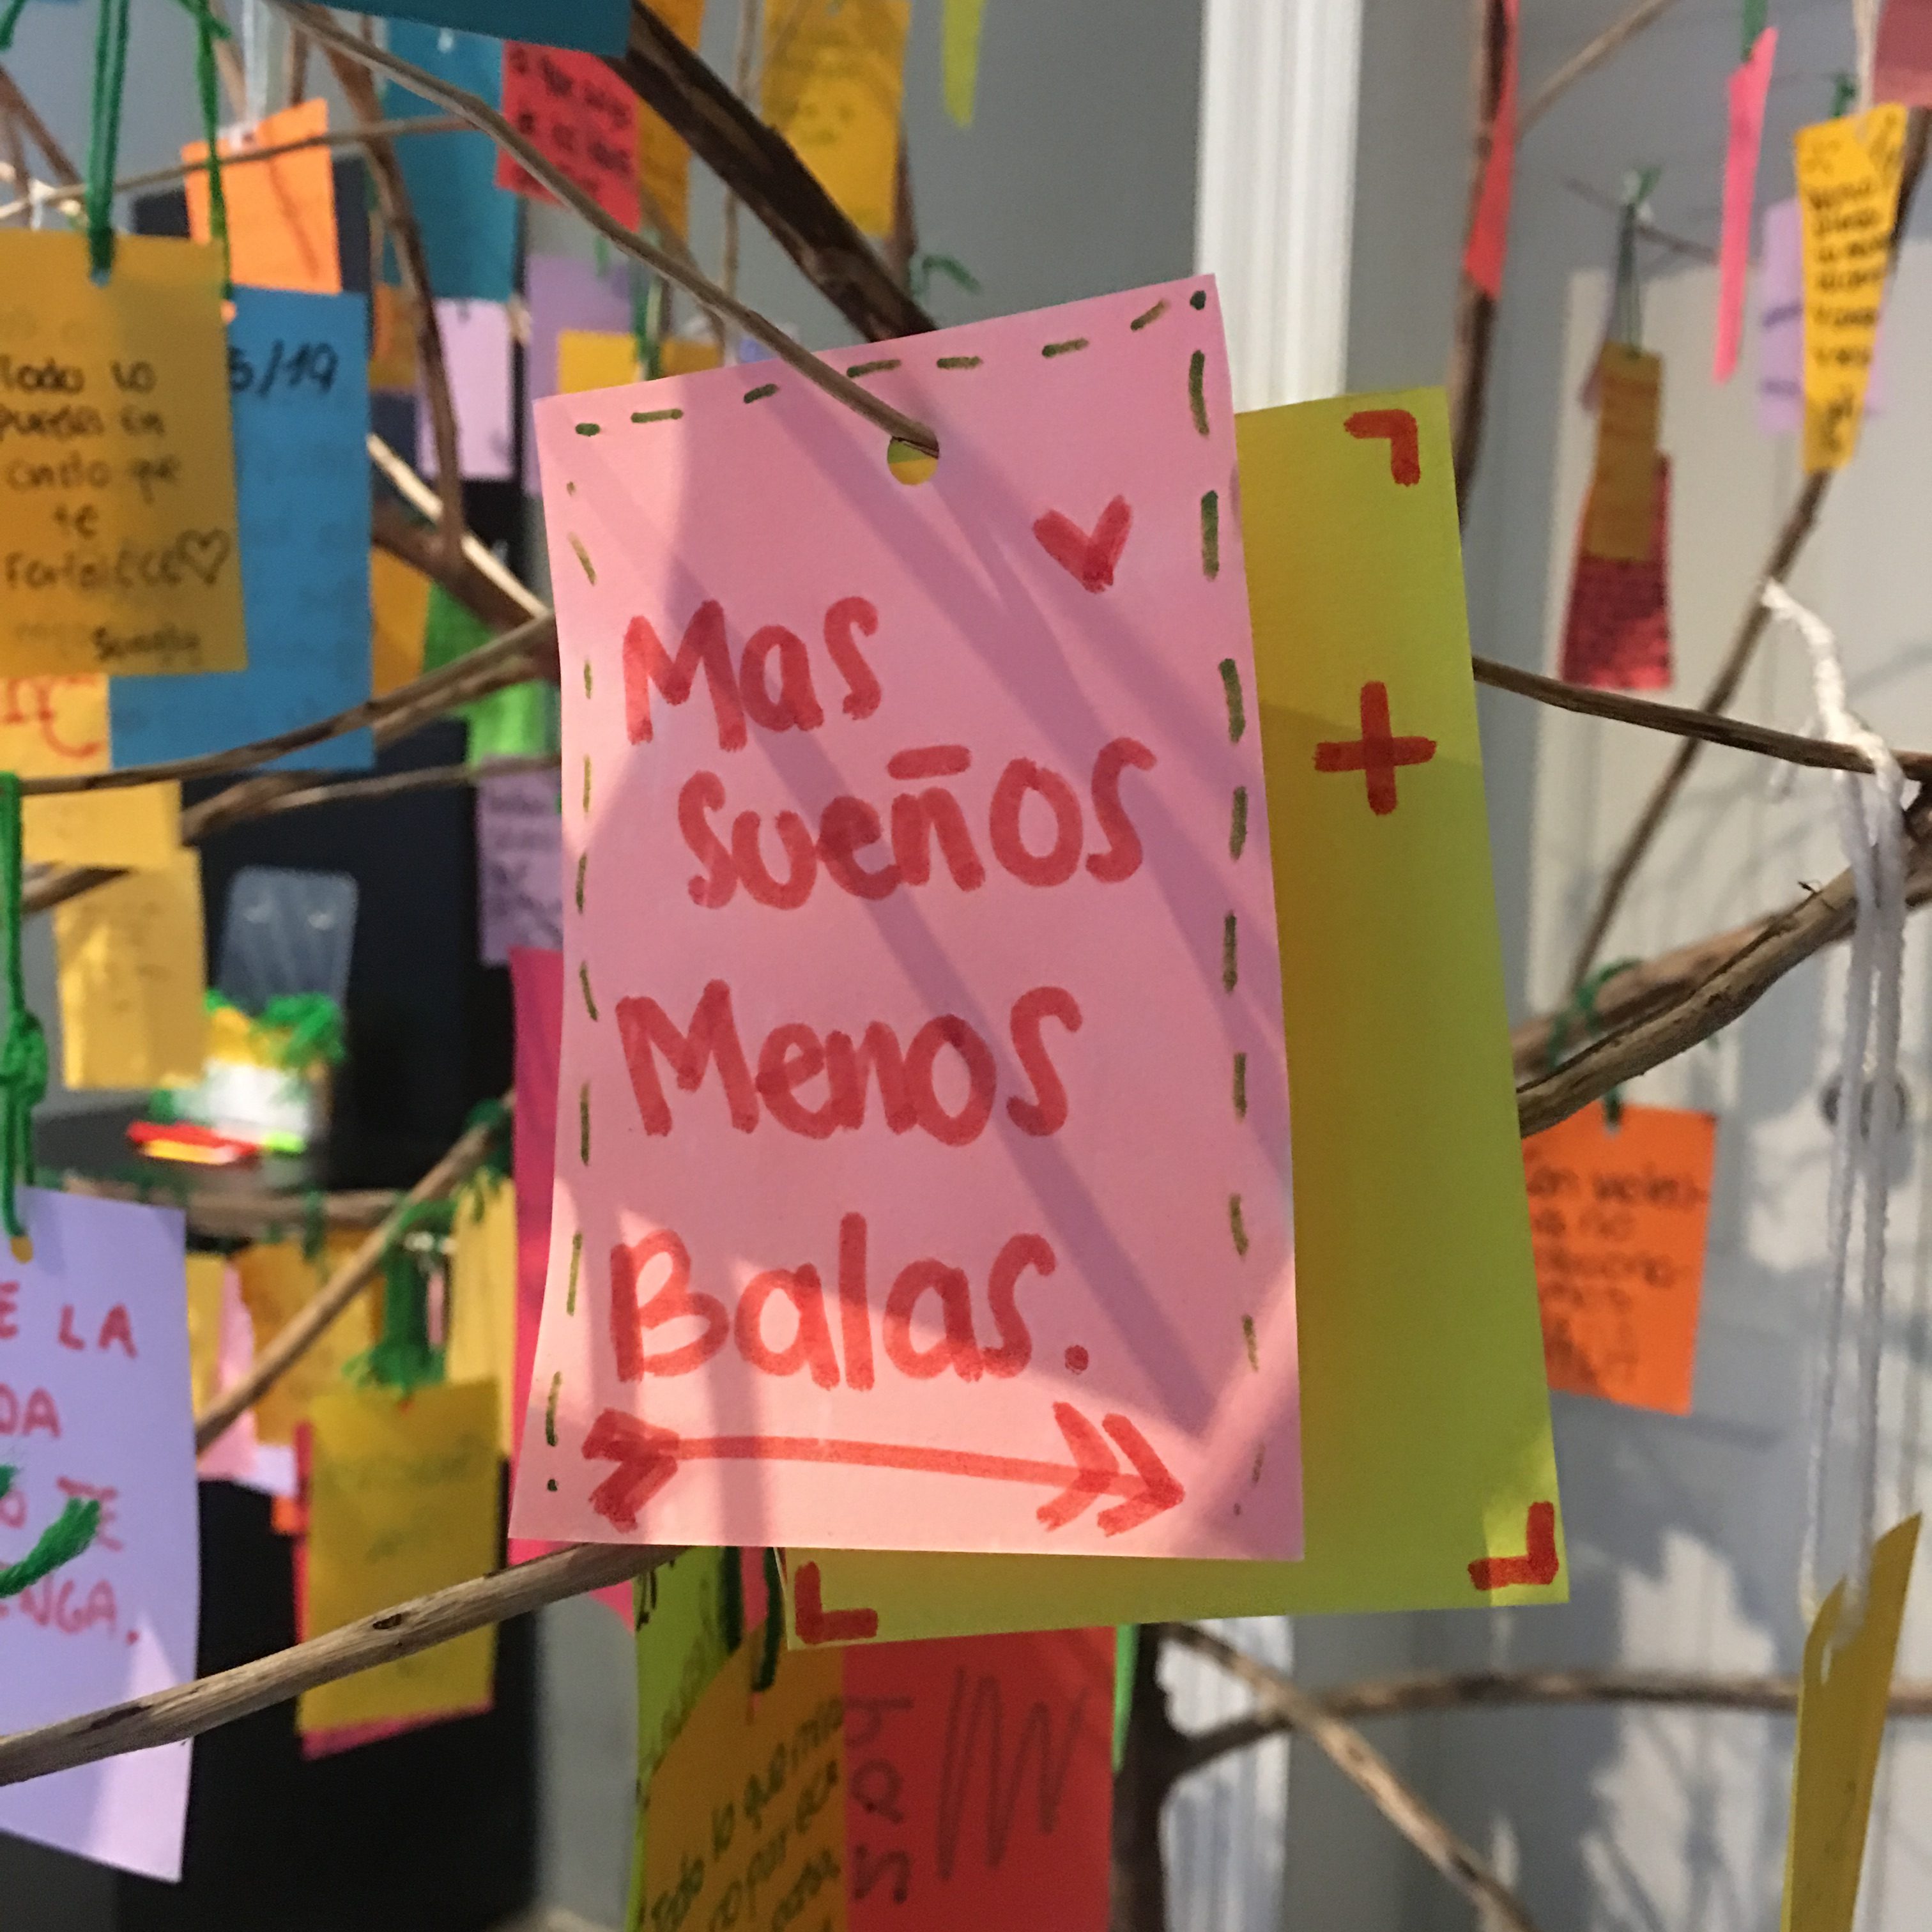 "Más sueños, menos balas", uno de los mensajes de paz y tolerancia en el Árbol de la Vida del Museo del Holocausto en Guatemala. (Foto Prensa Libre: Daniel Guillén Flores)